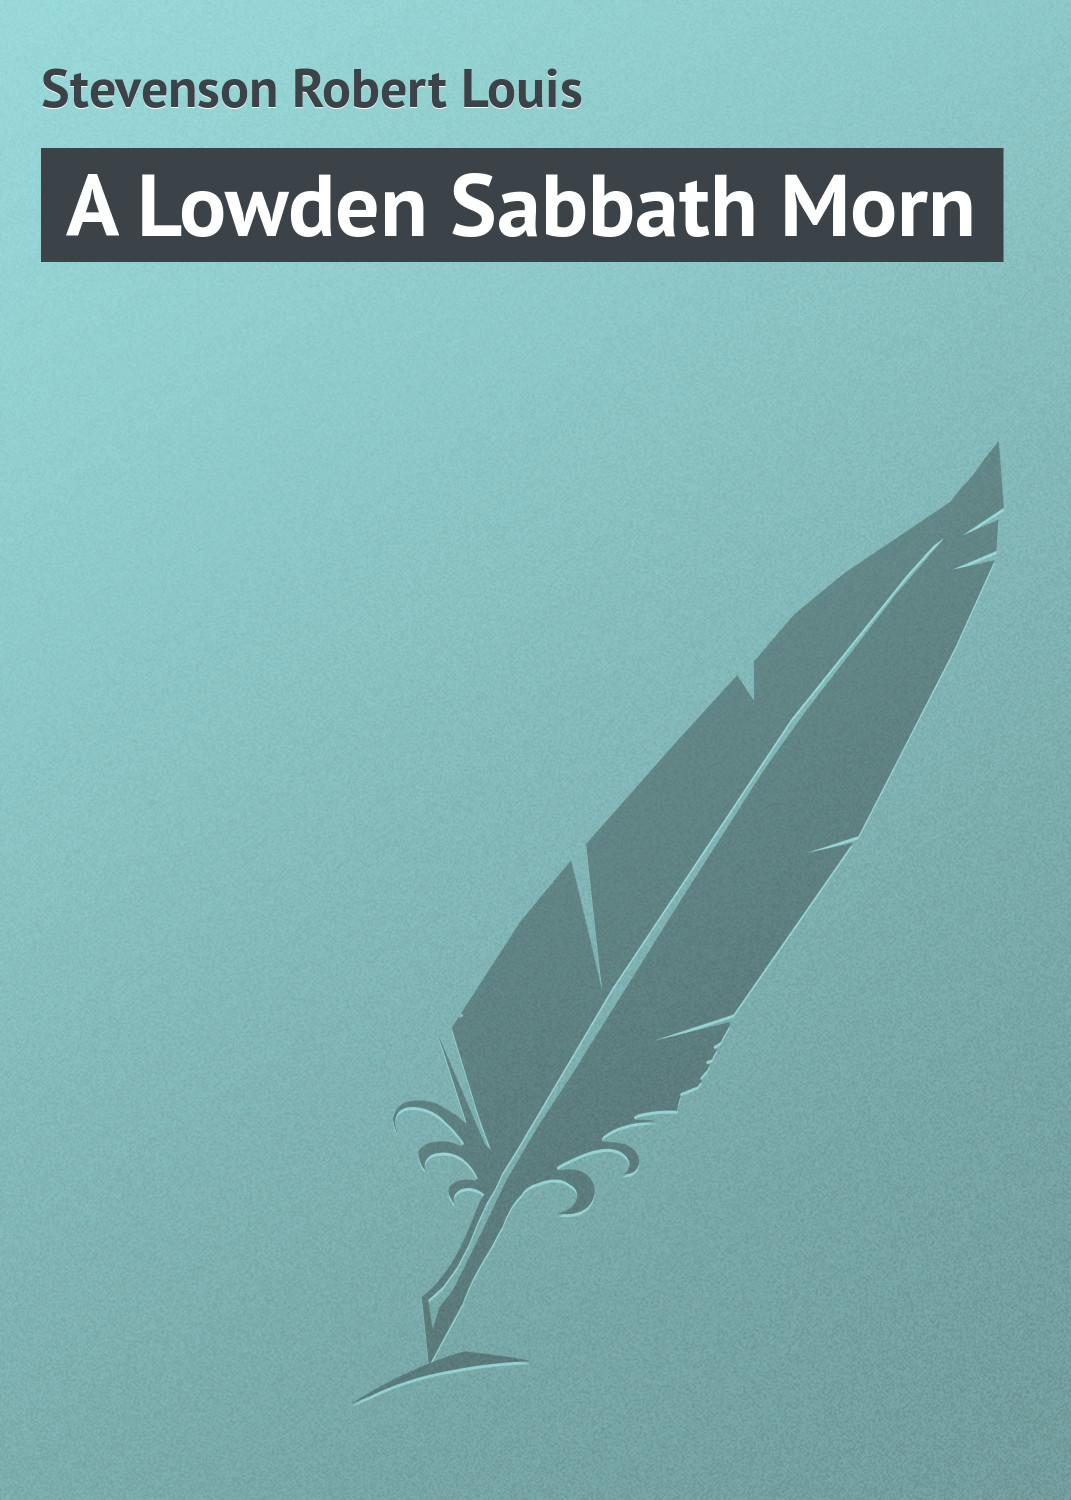 Книга A Lowden Sabbath Morn из серии , созданная Robert Stevenson, может относится к жанру Поэзия, Зарубежная классика, Зарубежные стихи. Стоимость электронной книги A Lowden Sabbath Morn с идентификатором 23164283 составляет 5.99 руб.